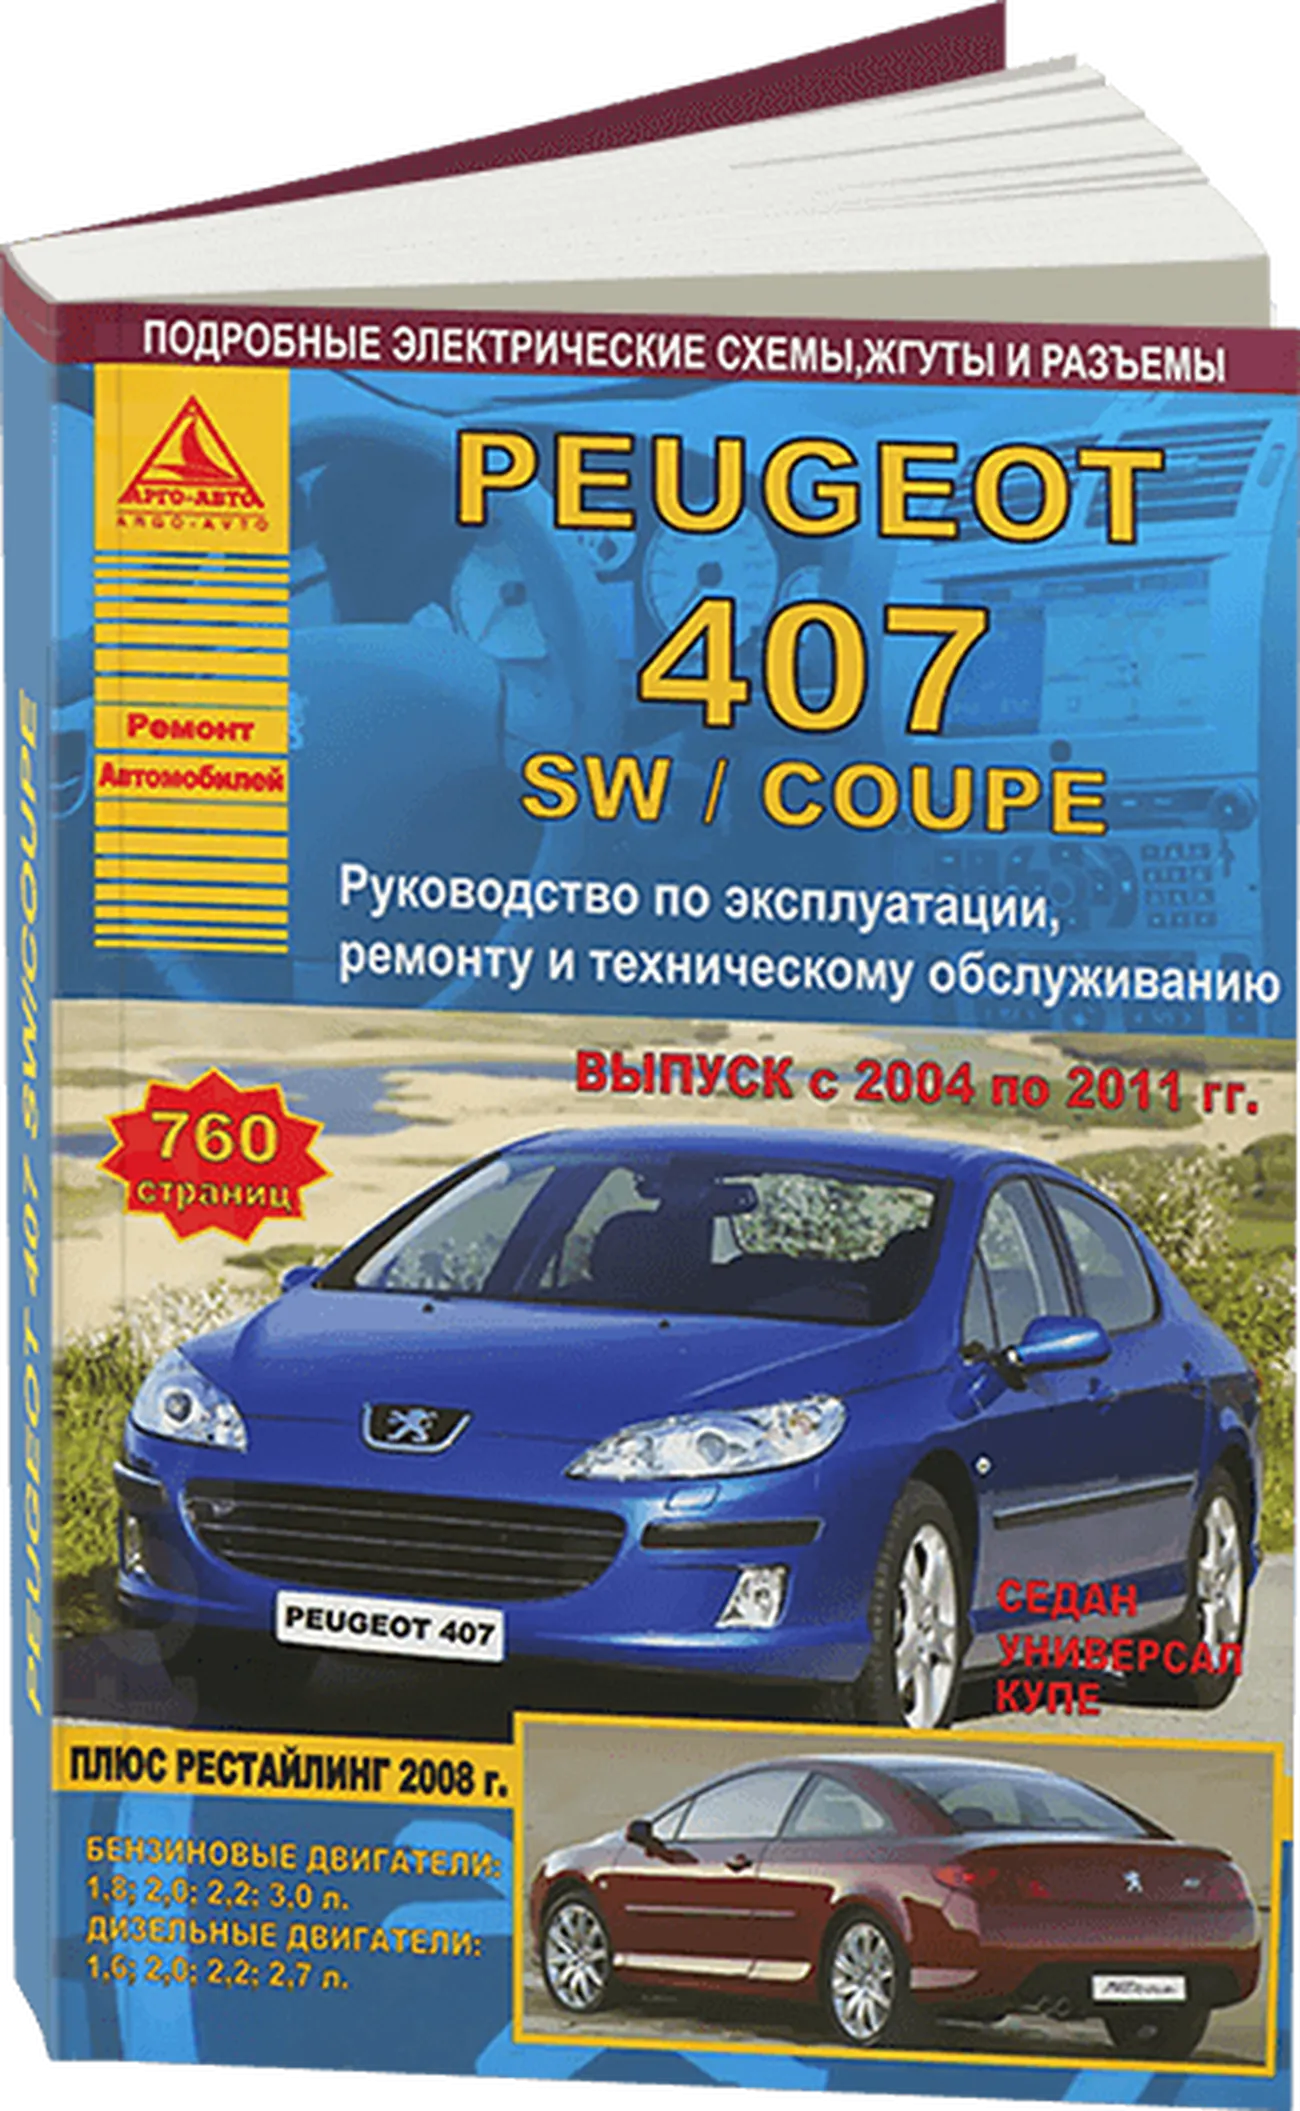 Книга: PEUGEOT 407 (б , д) 2004-2011 г.в., рем., экспл., то + рест. 2008 г. | Арго-Авто